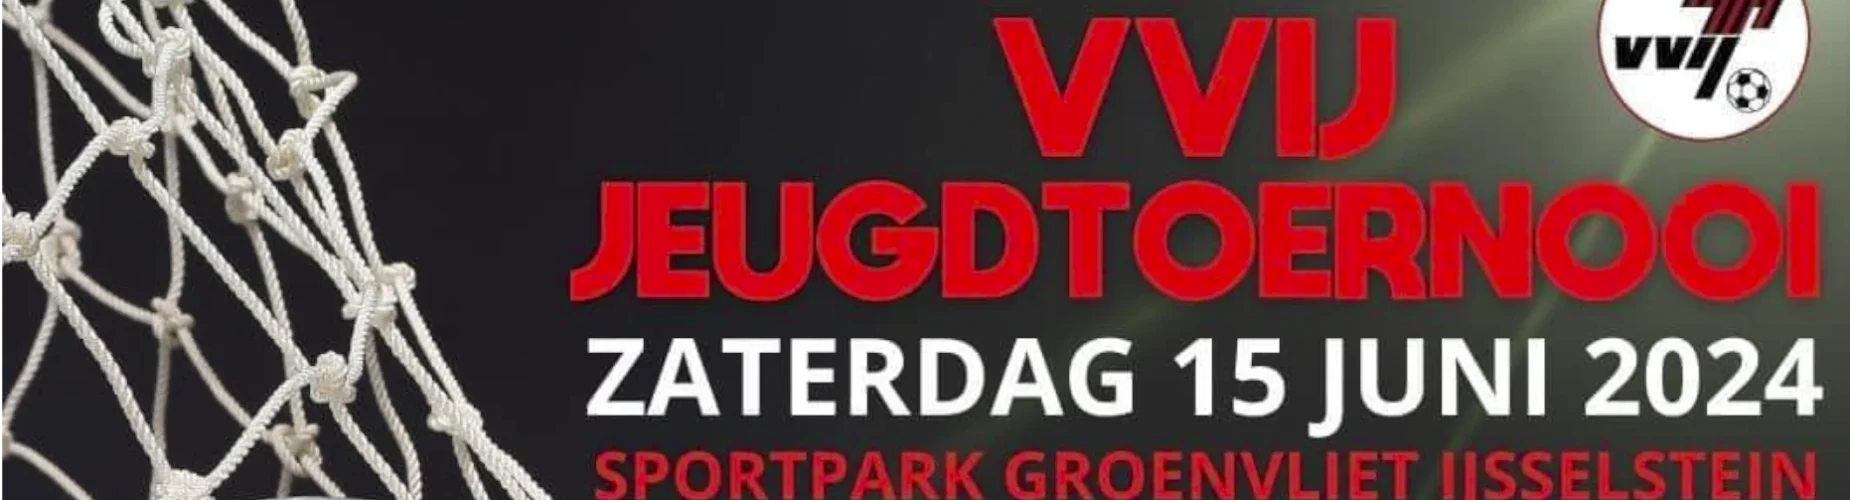 Banner - VVIJ Jeugdtoernooi - VVIJ - IJsselstein